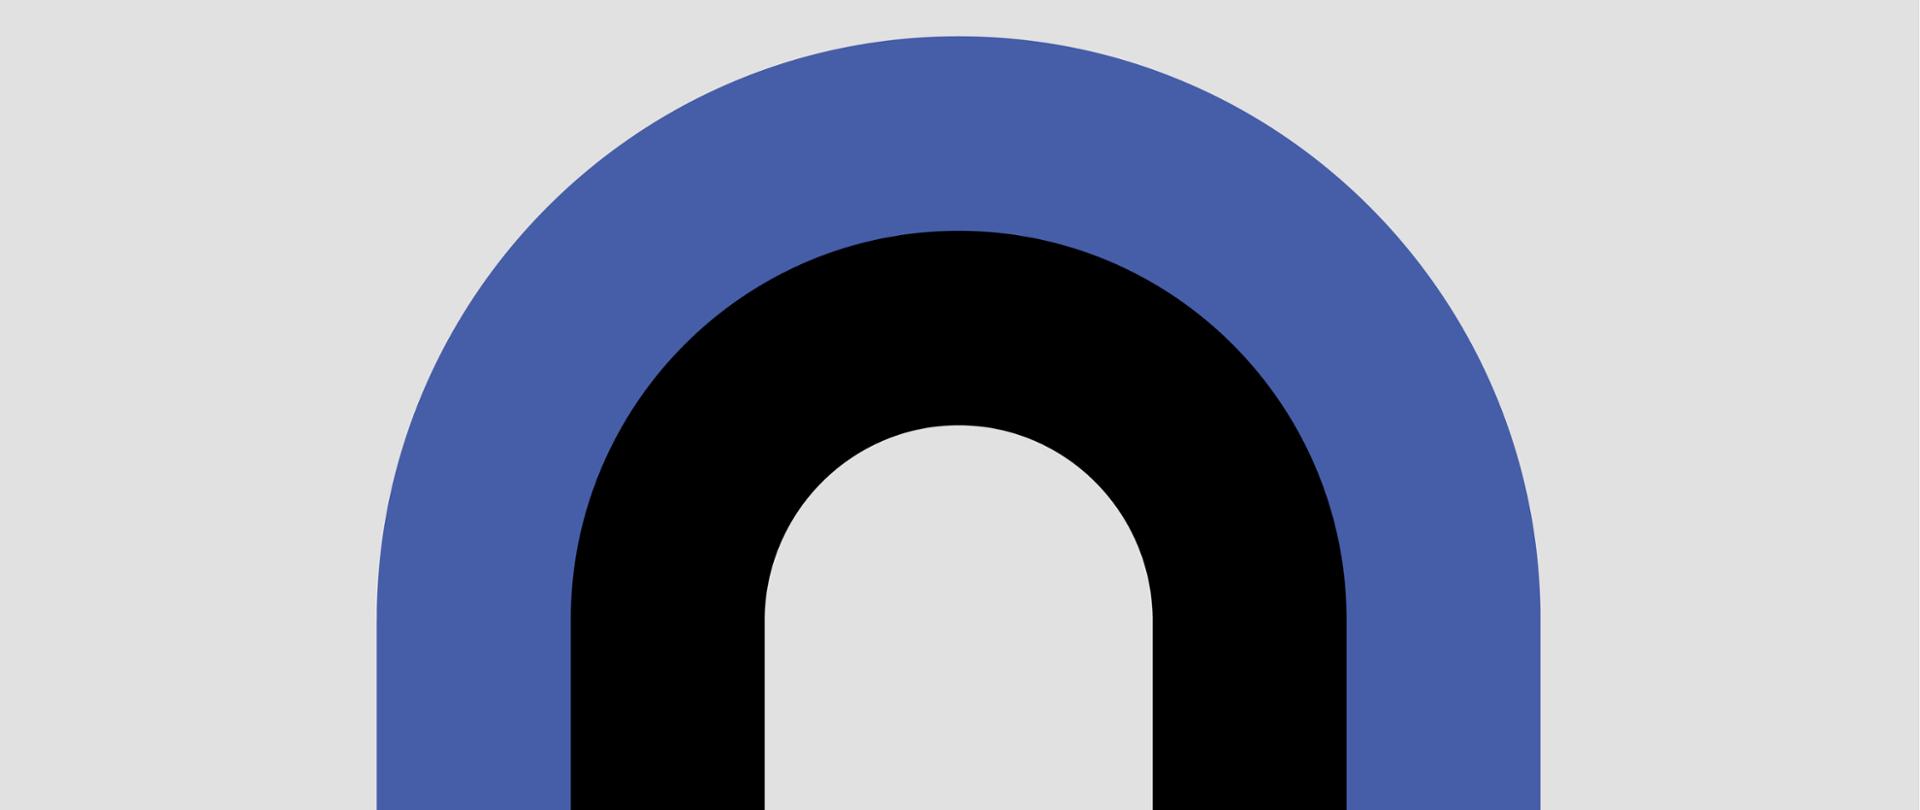 Grafika przedstawiająca łuk w kształcie podkowy składający się z dwóch kolorów - czarny i niebieski, na jasnym tle.